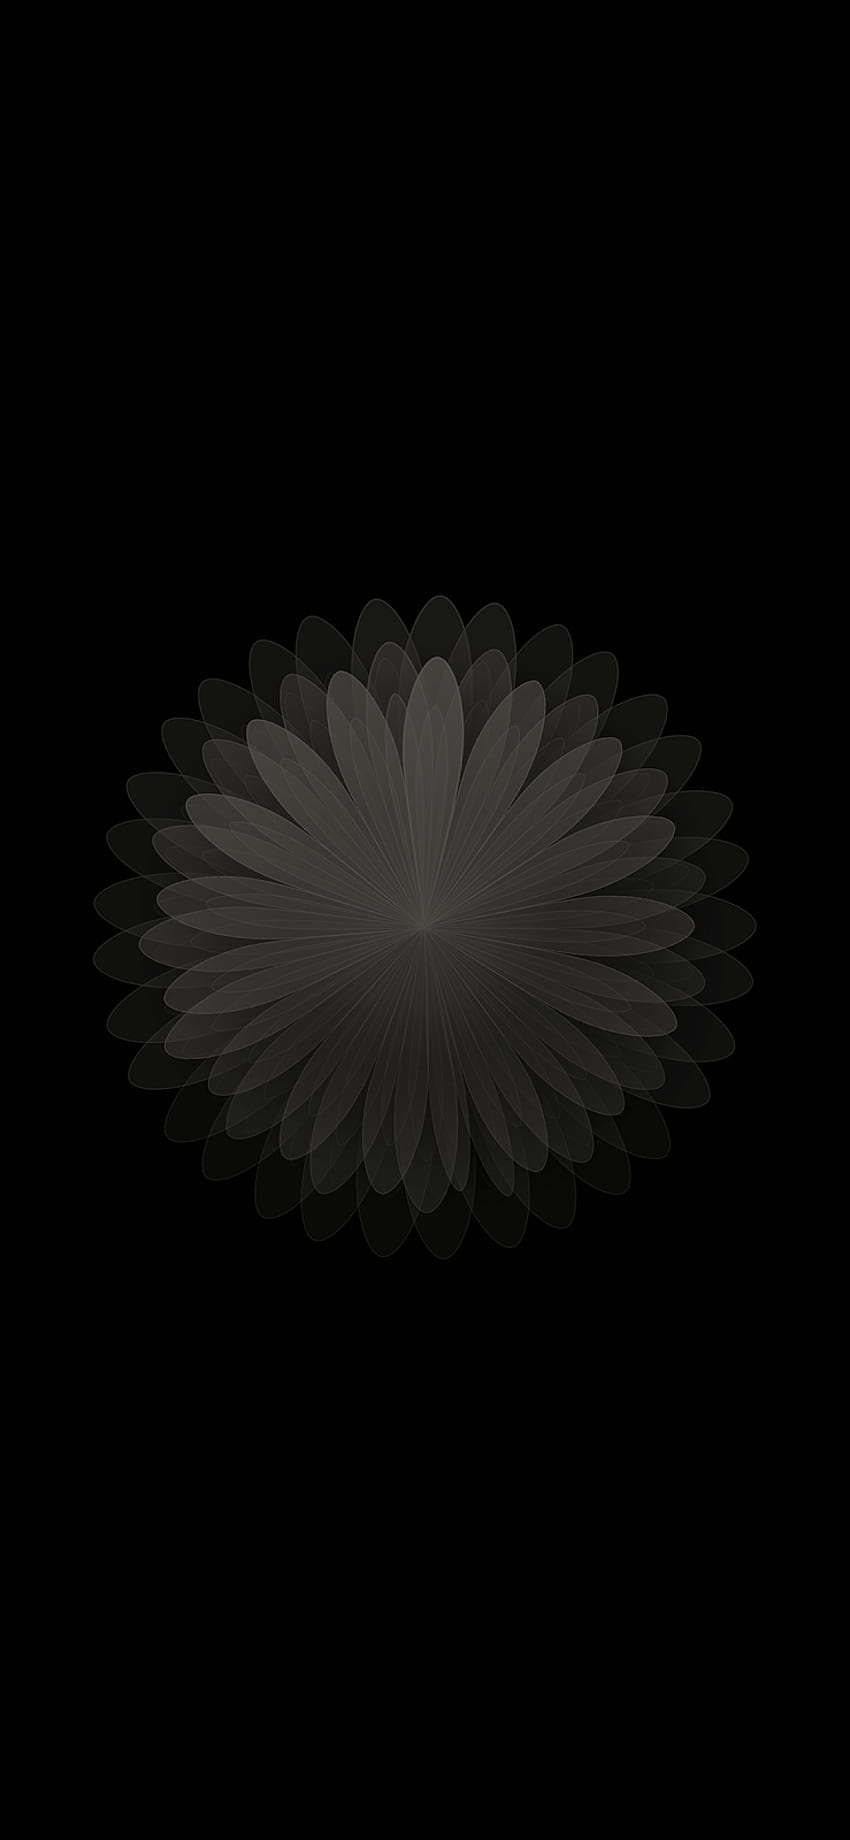 Roman's Apple: iPhone X AMOLED bunga berwarna hitam wallpaper ponsel HD